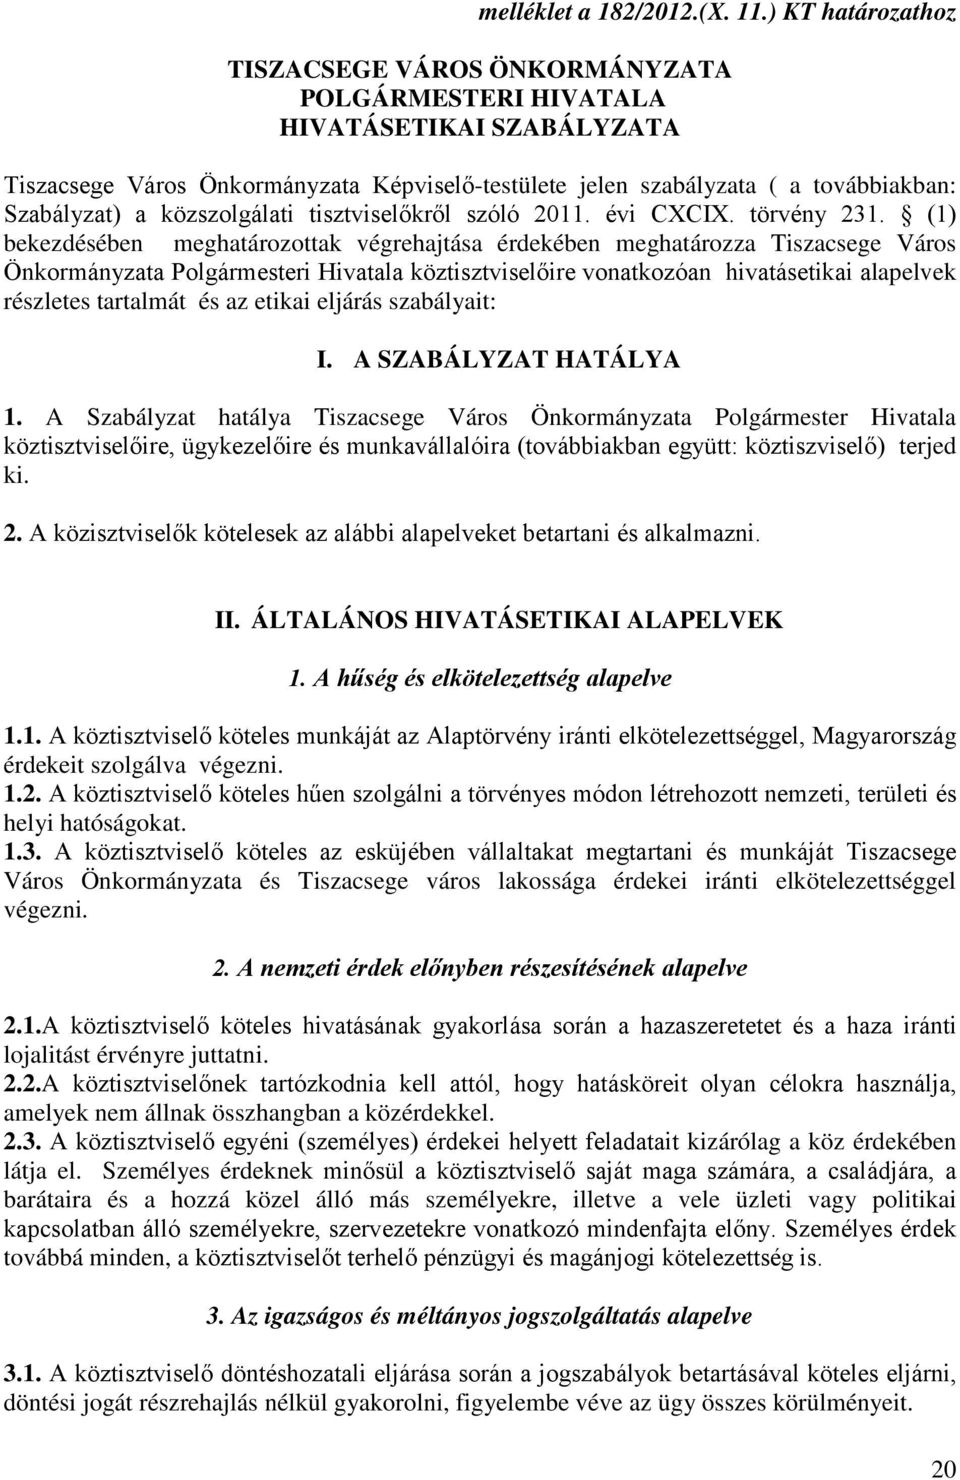 közszolgálati tisztviselőkről szóló 2011. évi CXCIX. törvény 231.